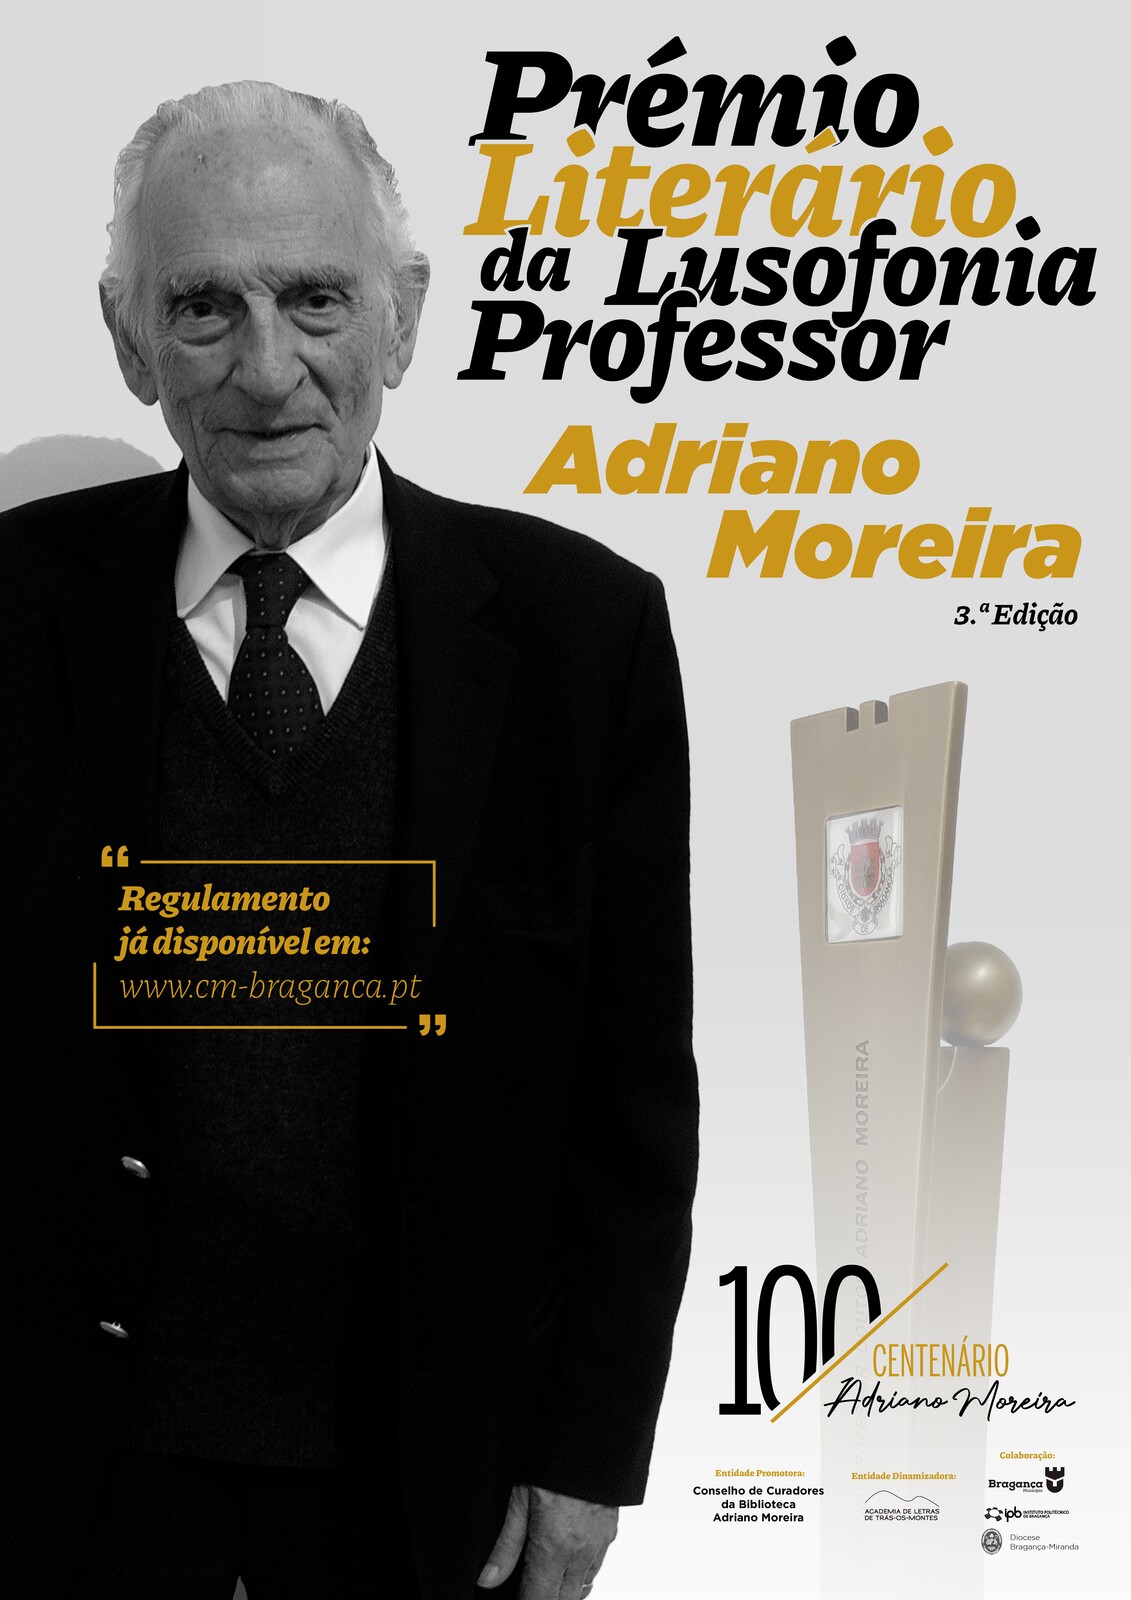 Prémio Literário Professor Adriano Moreira - 3.ª Edição [Inscrições]